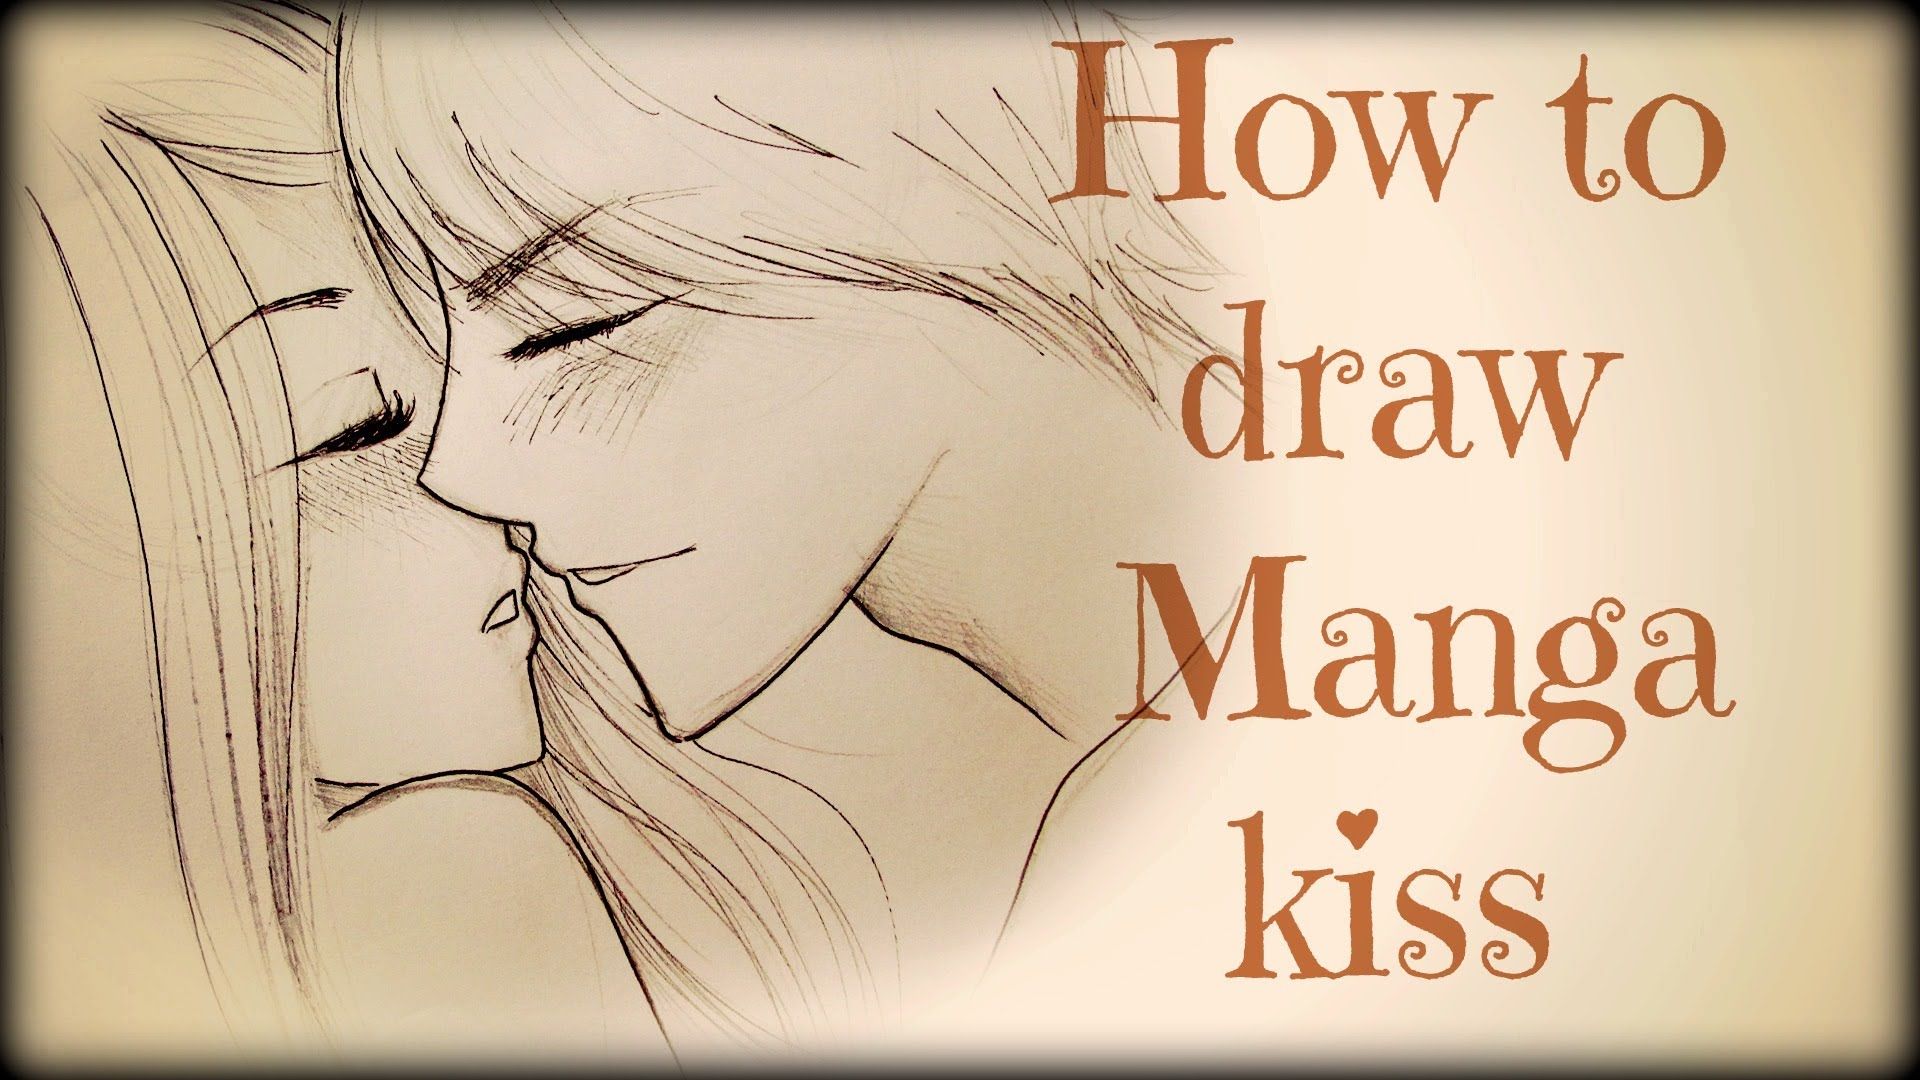 the kiss sketch by oddkitten on DeviantArt